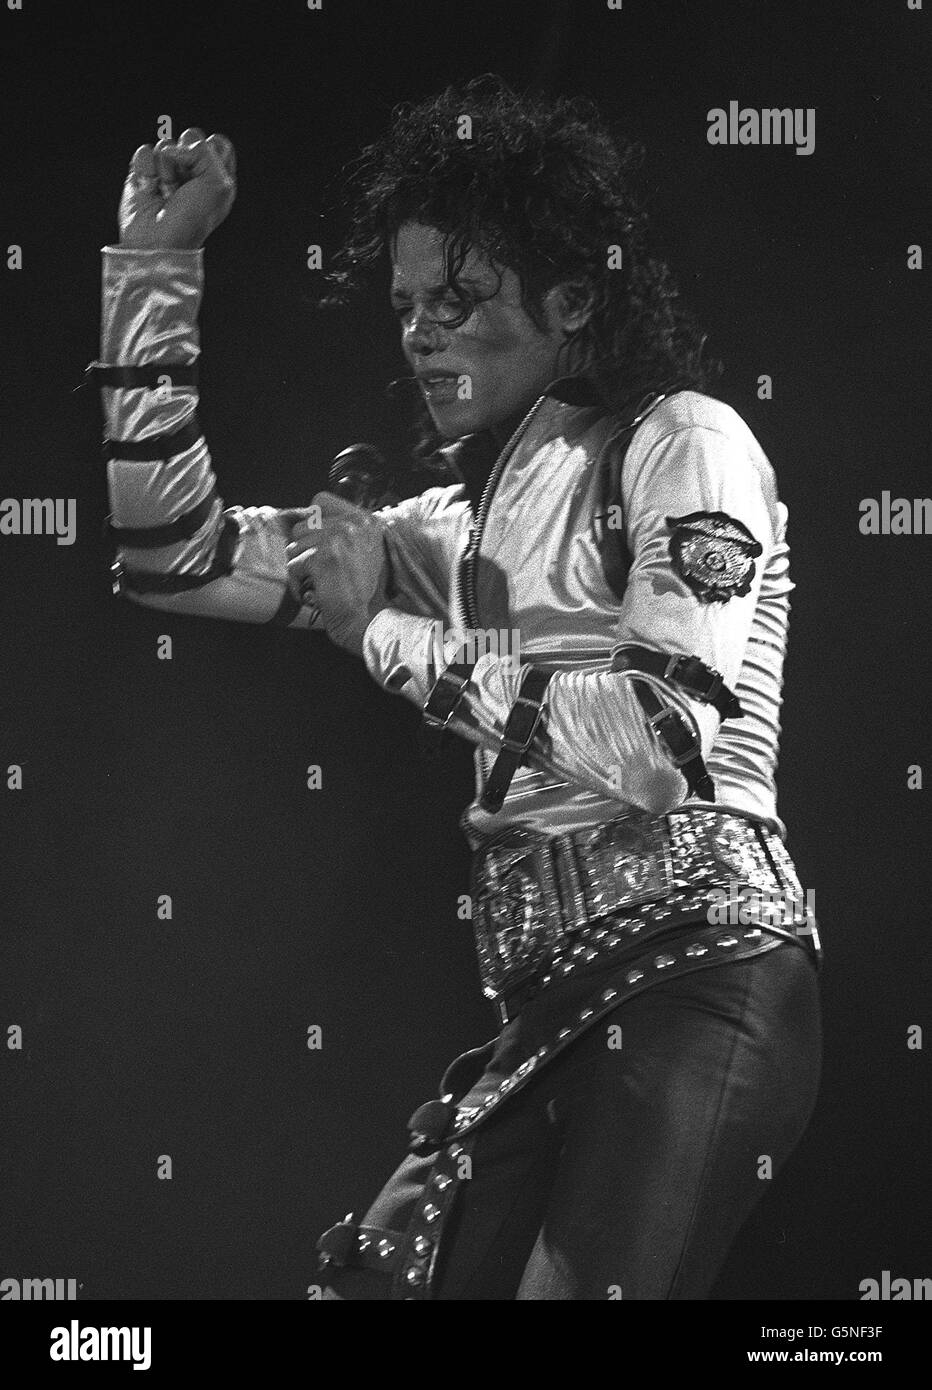 Michael Jackson rocks Wembley Stadium, alors qu'il commence la partie britannique de sa tournée de liquidation. Banque D'Images